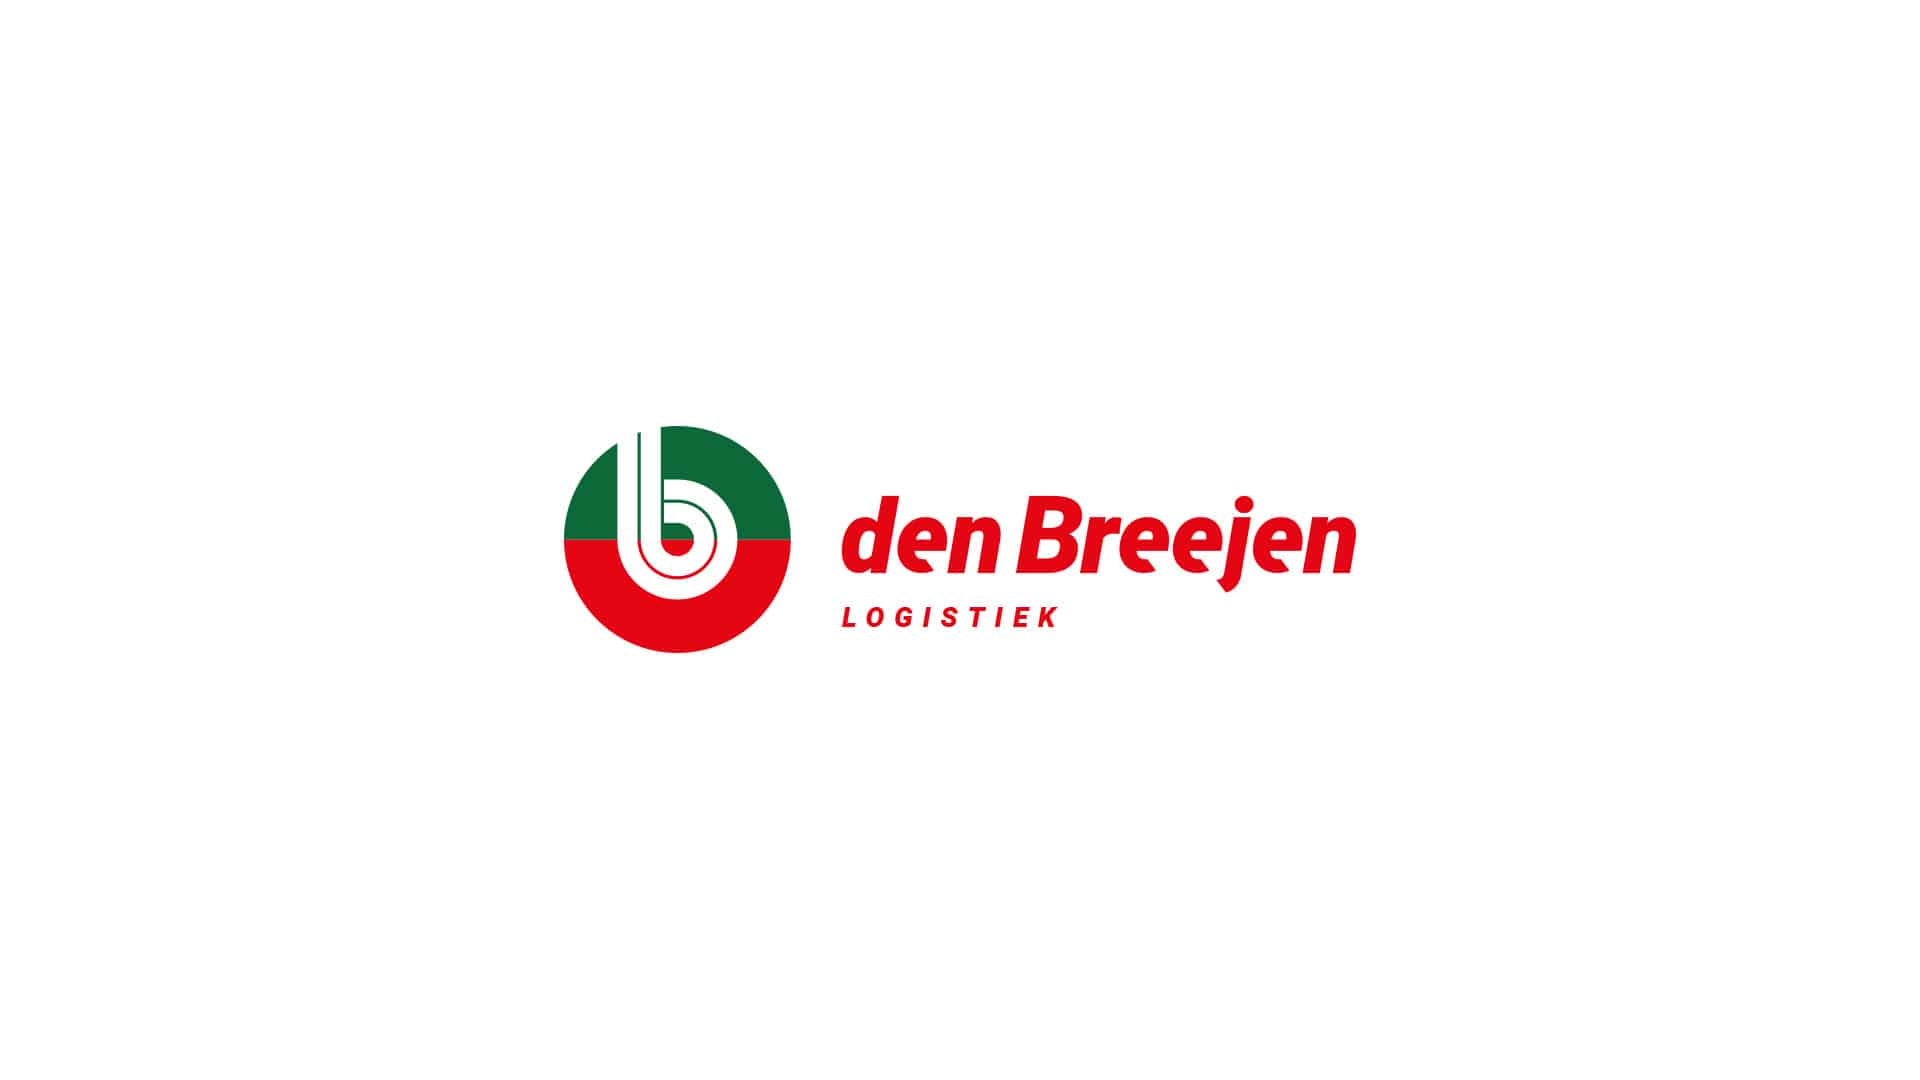 den-breejen-logo-logistiek